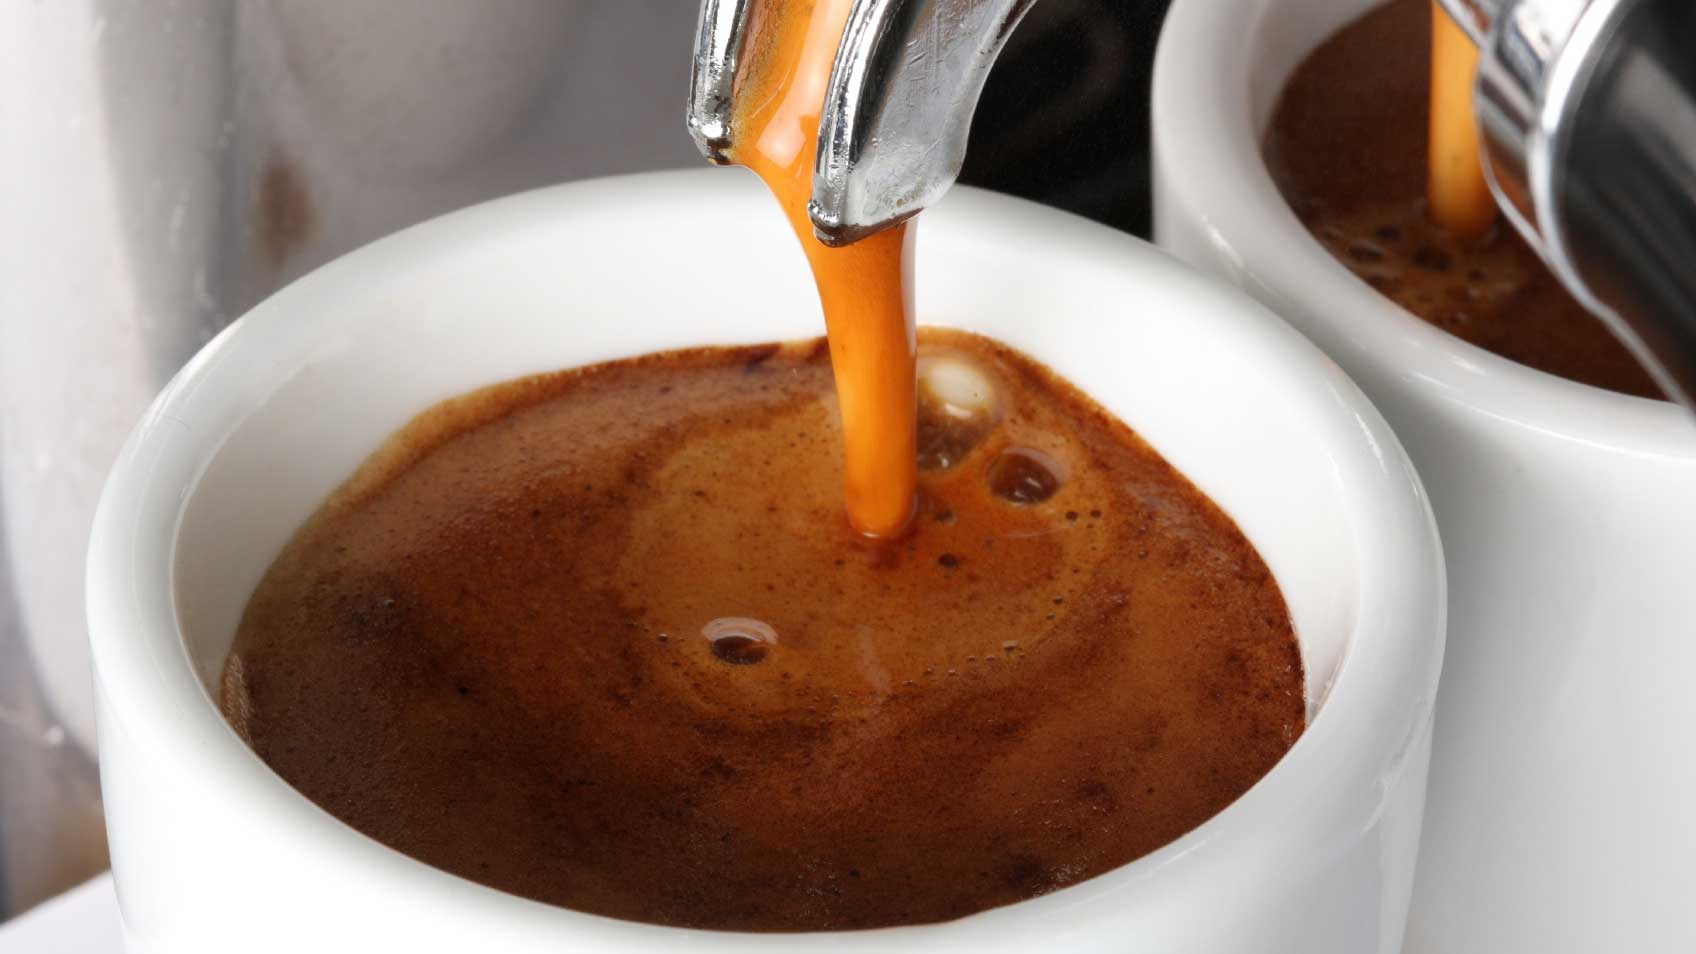 Cà phê sạch phải trải qua nhiều quy trình xử lý tiêu chuẩn.